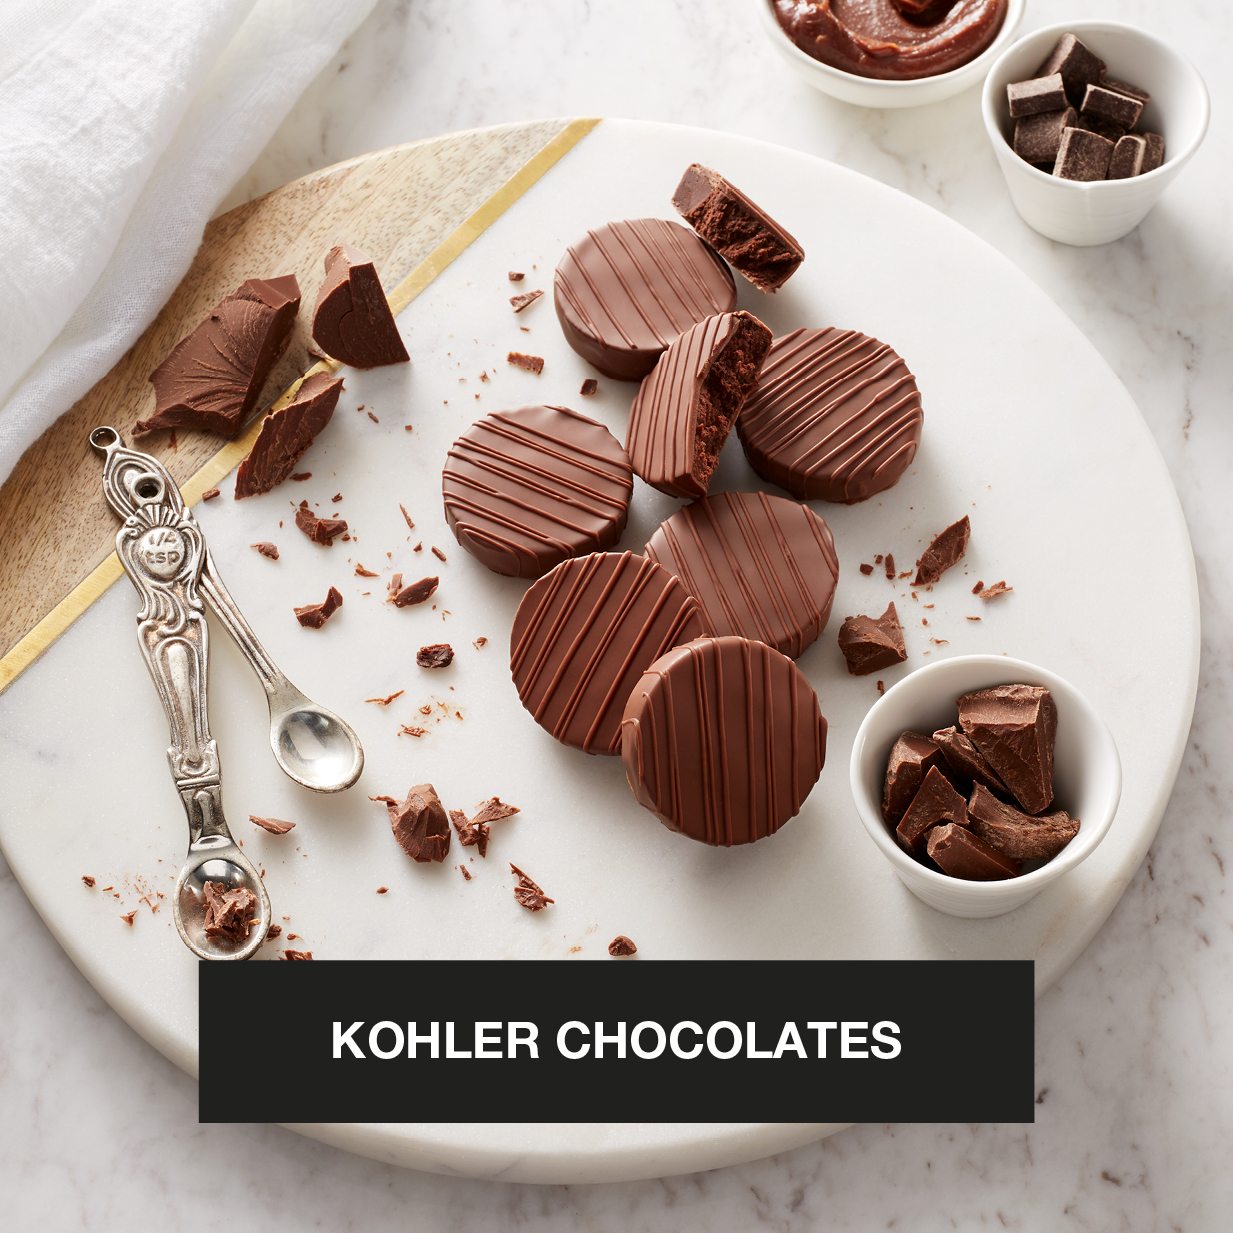 KOHLER CHOCOLATES